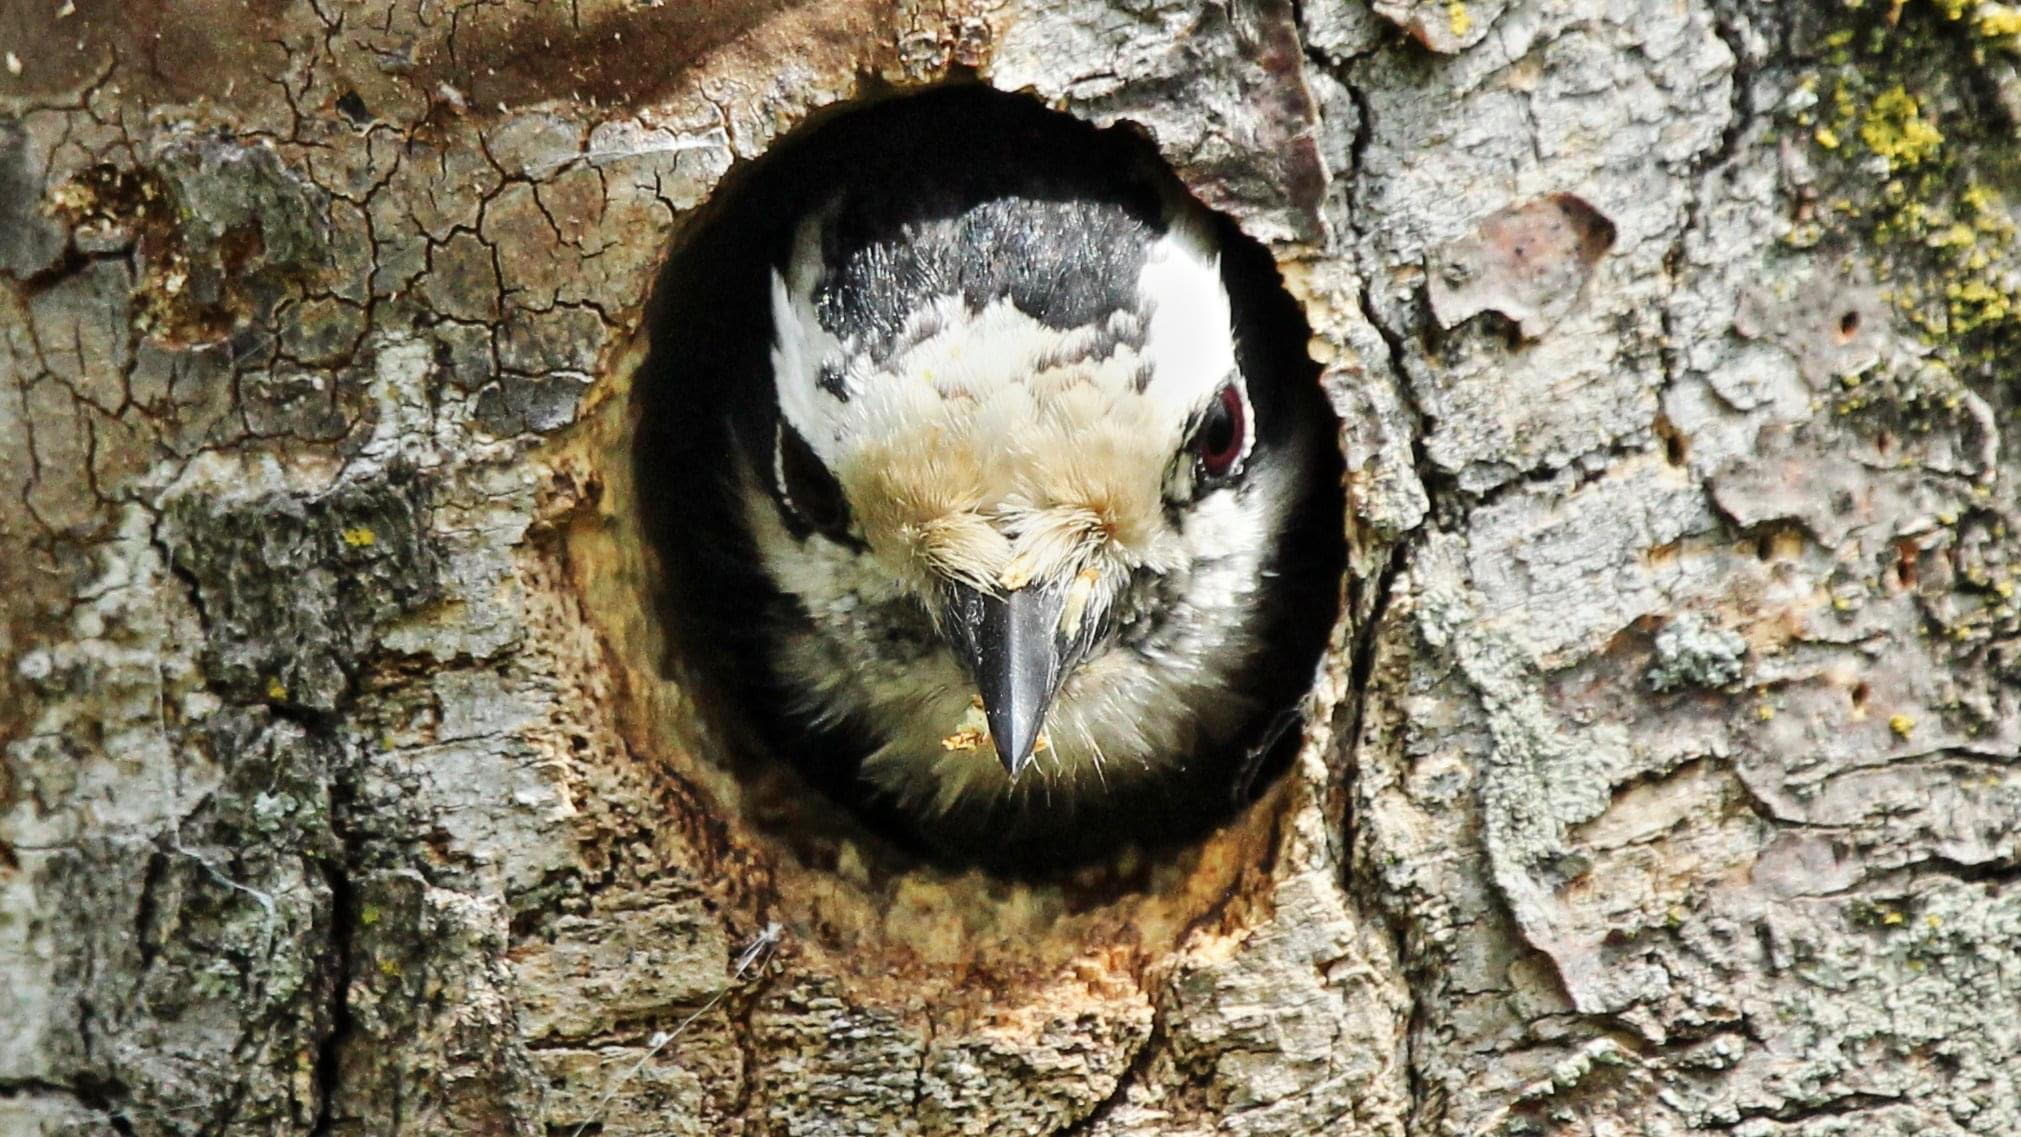 Downy woodpecker in a tree, photo by John Garbutt